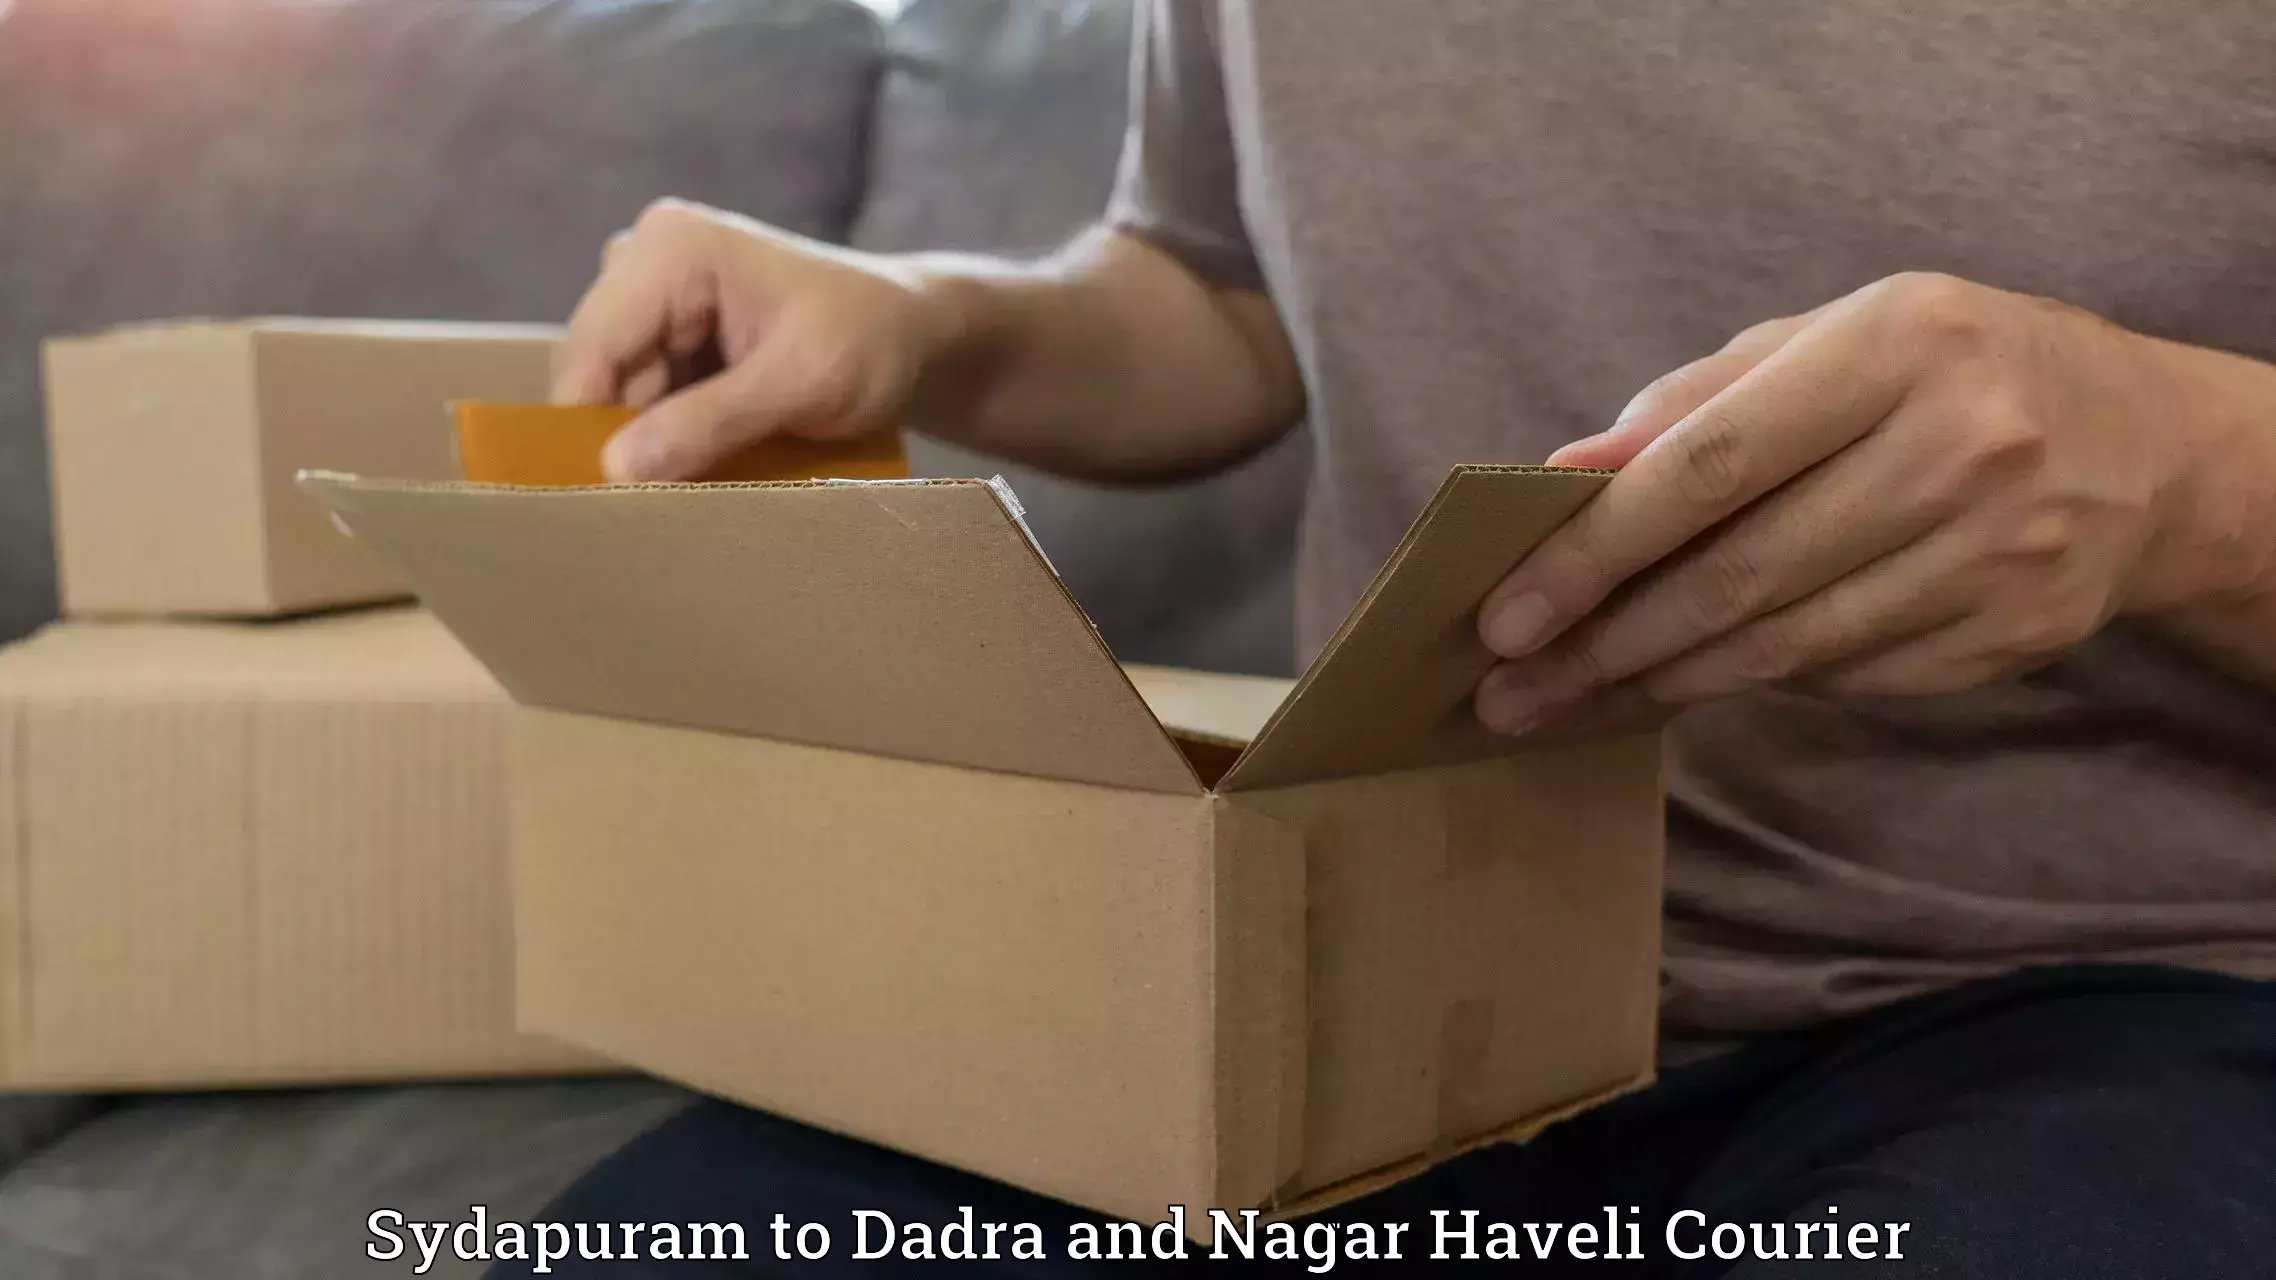 Special handling courier Sydapuram to Dadra and Nagar Haveli